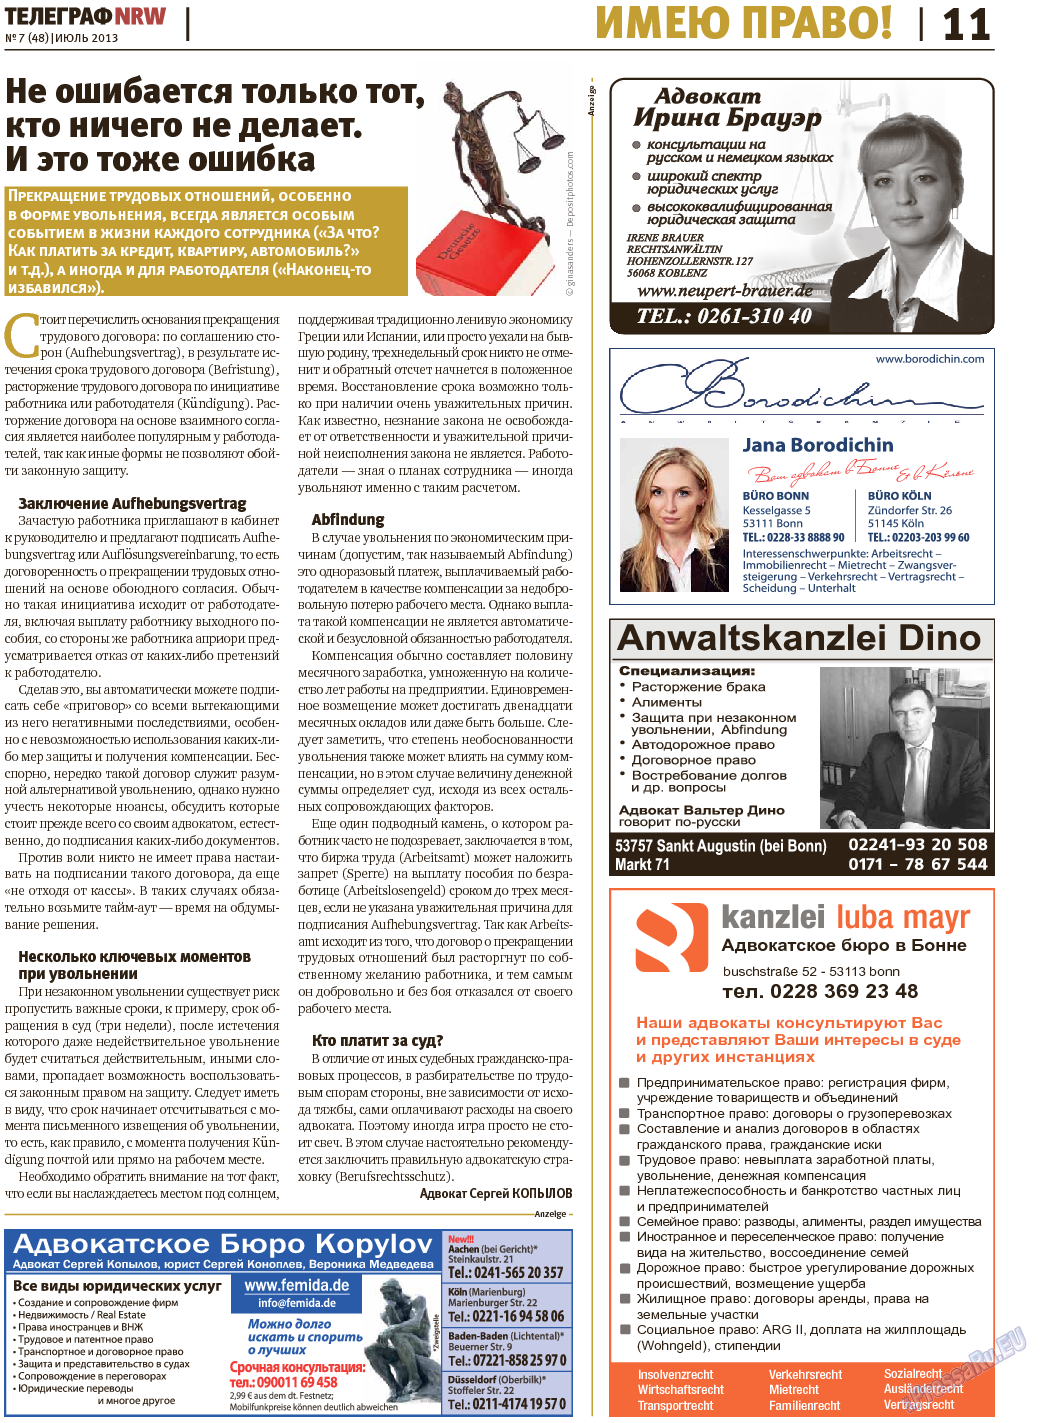 Телеграф NRW (газета). 2013 год, номер 7, стр. 11